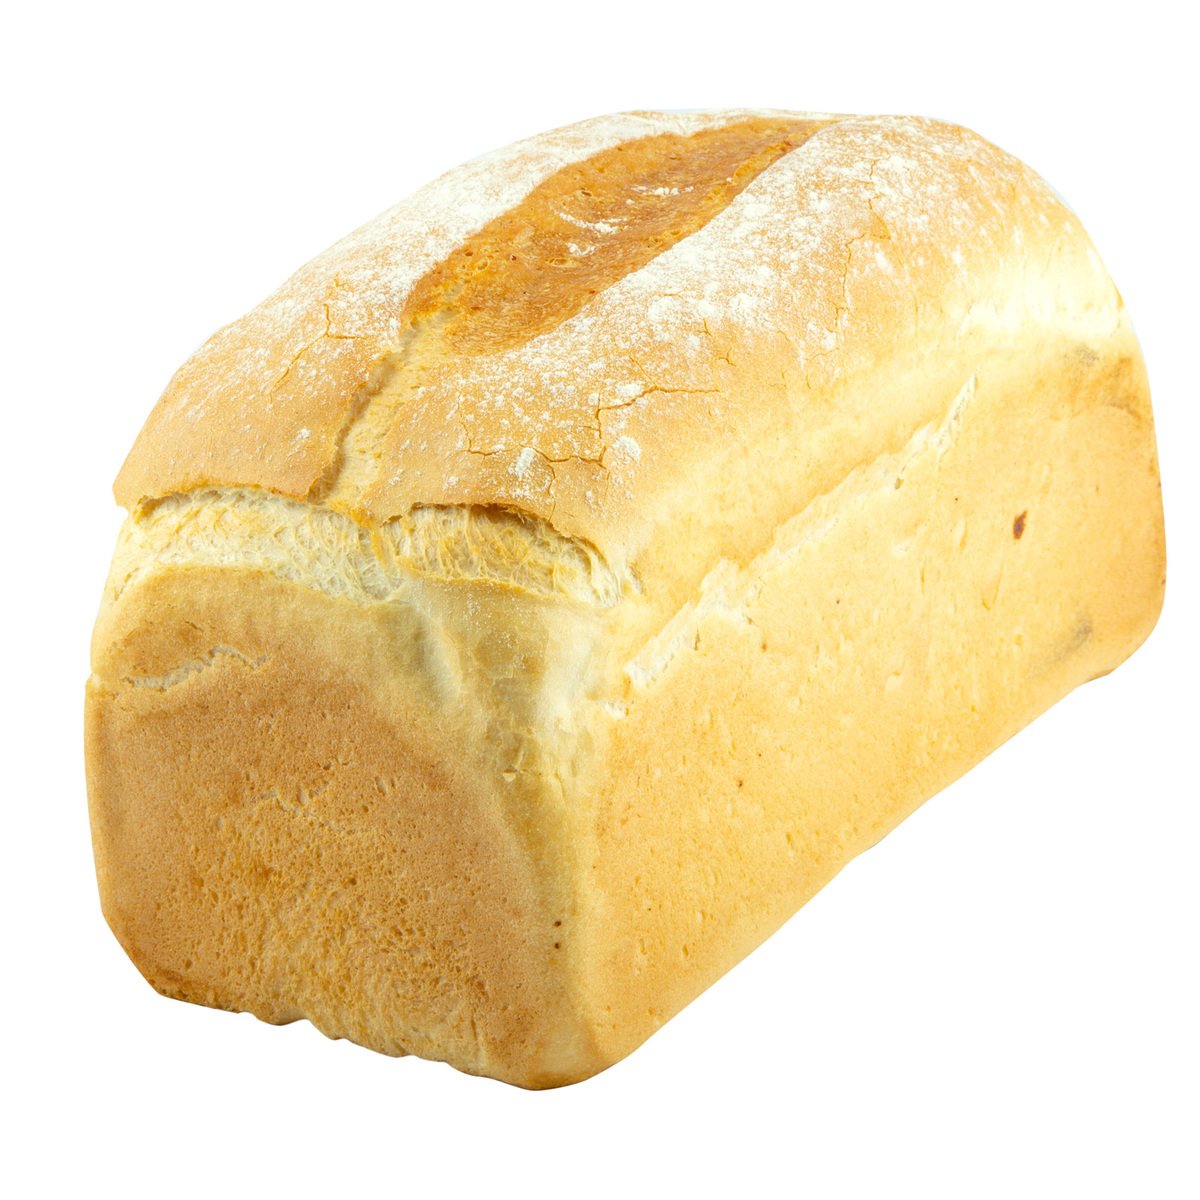 خبز مزرعة أبيض كبير قطعة واحدة